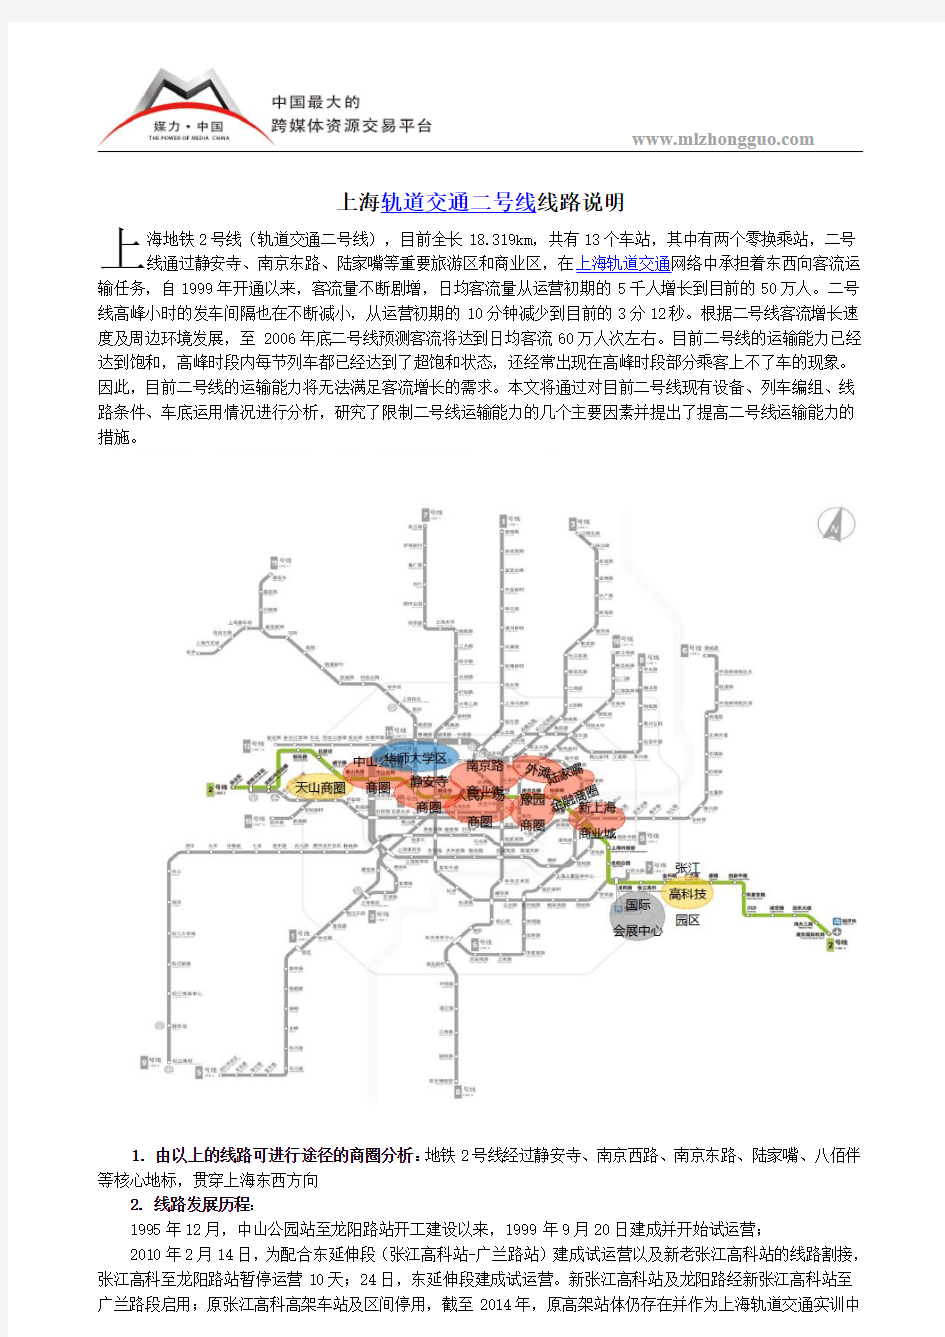 上海轨道交通二号线线路说明